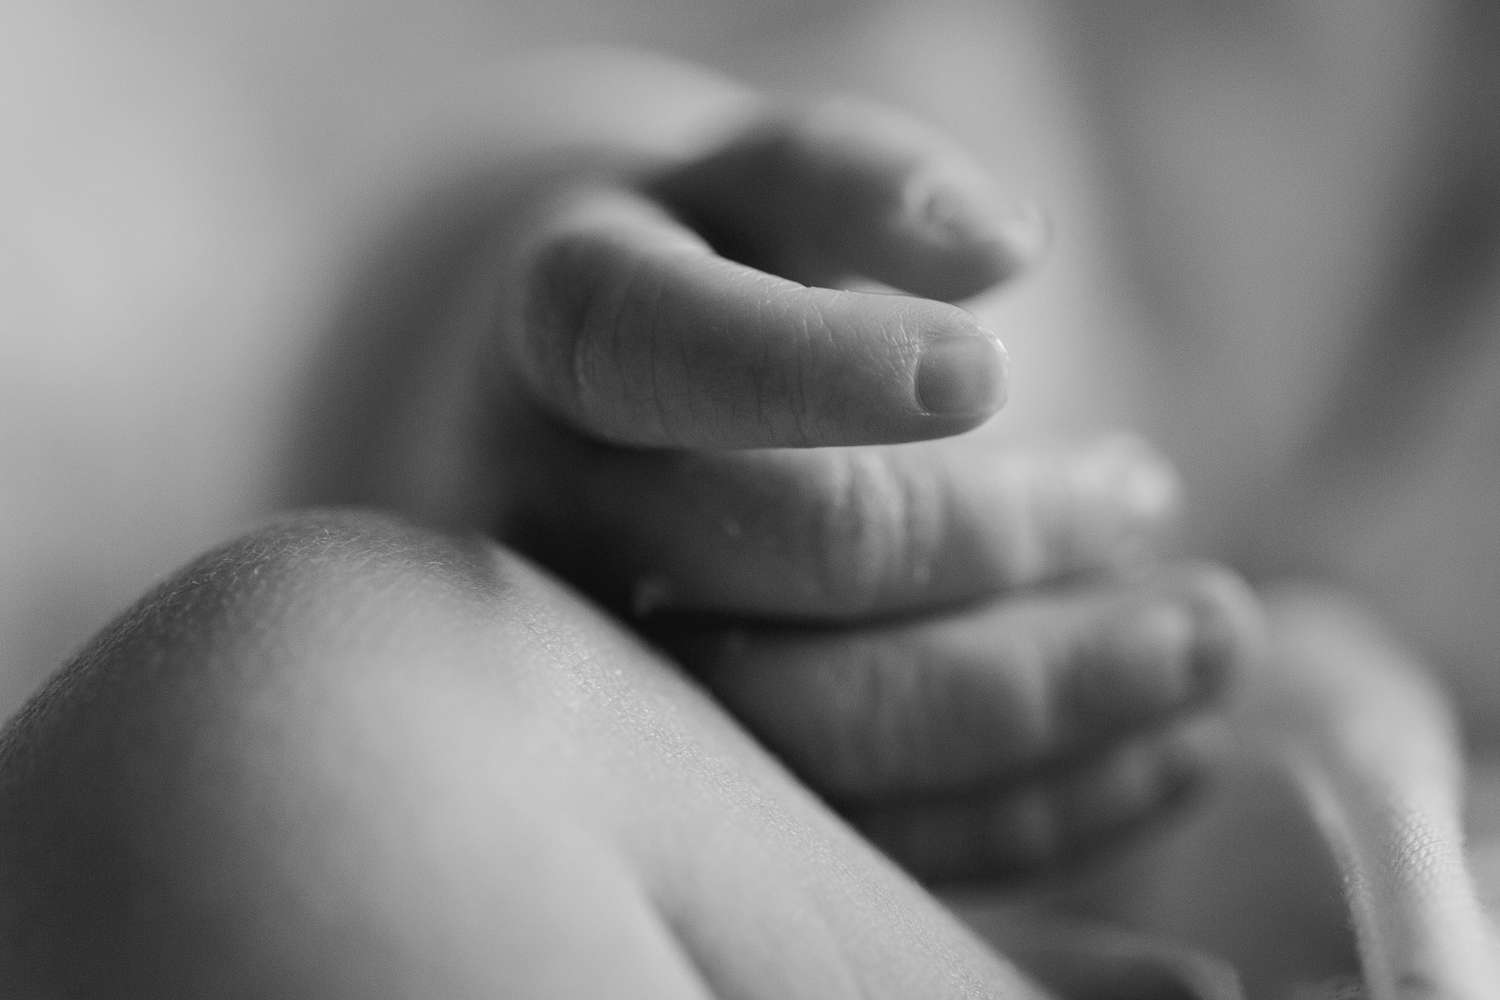 Un bebé de poco más de seis meses de gestación fue encontrado envuelto en trapos en un basural